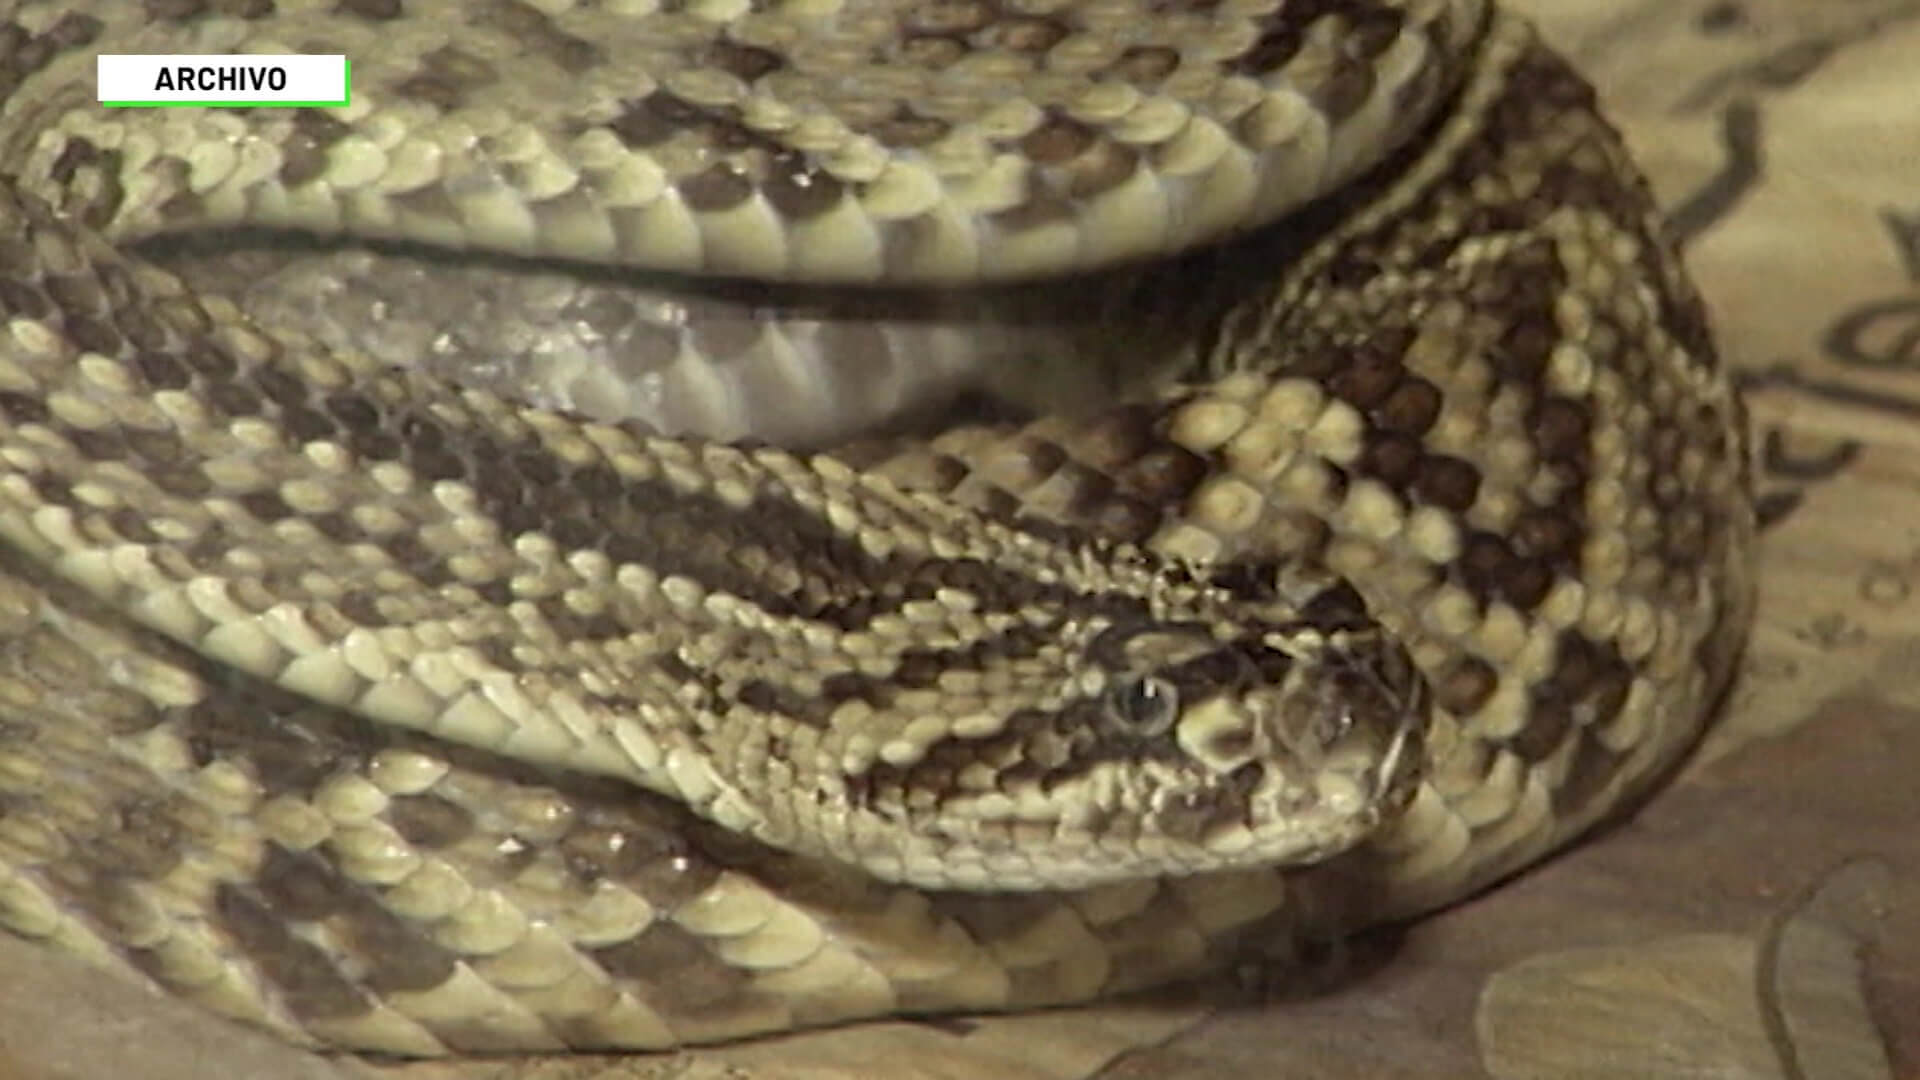 135 mordeduras de serpiente en Antioquia